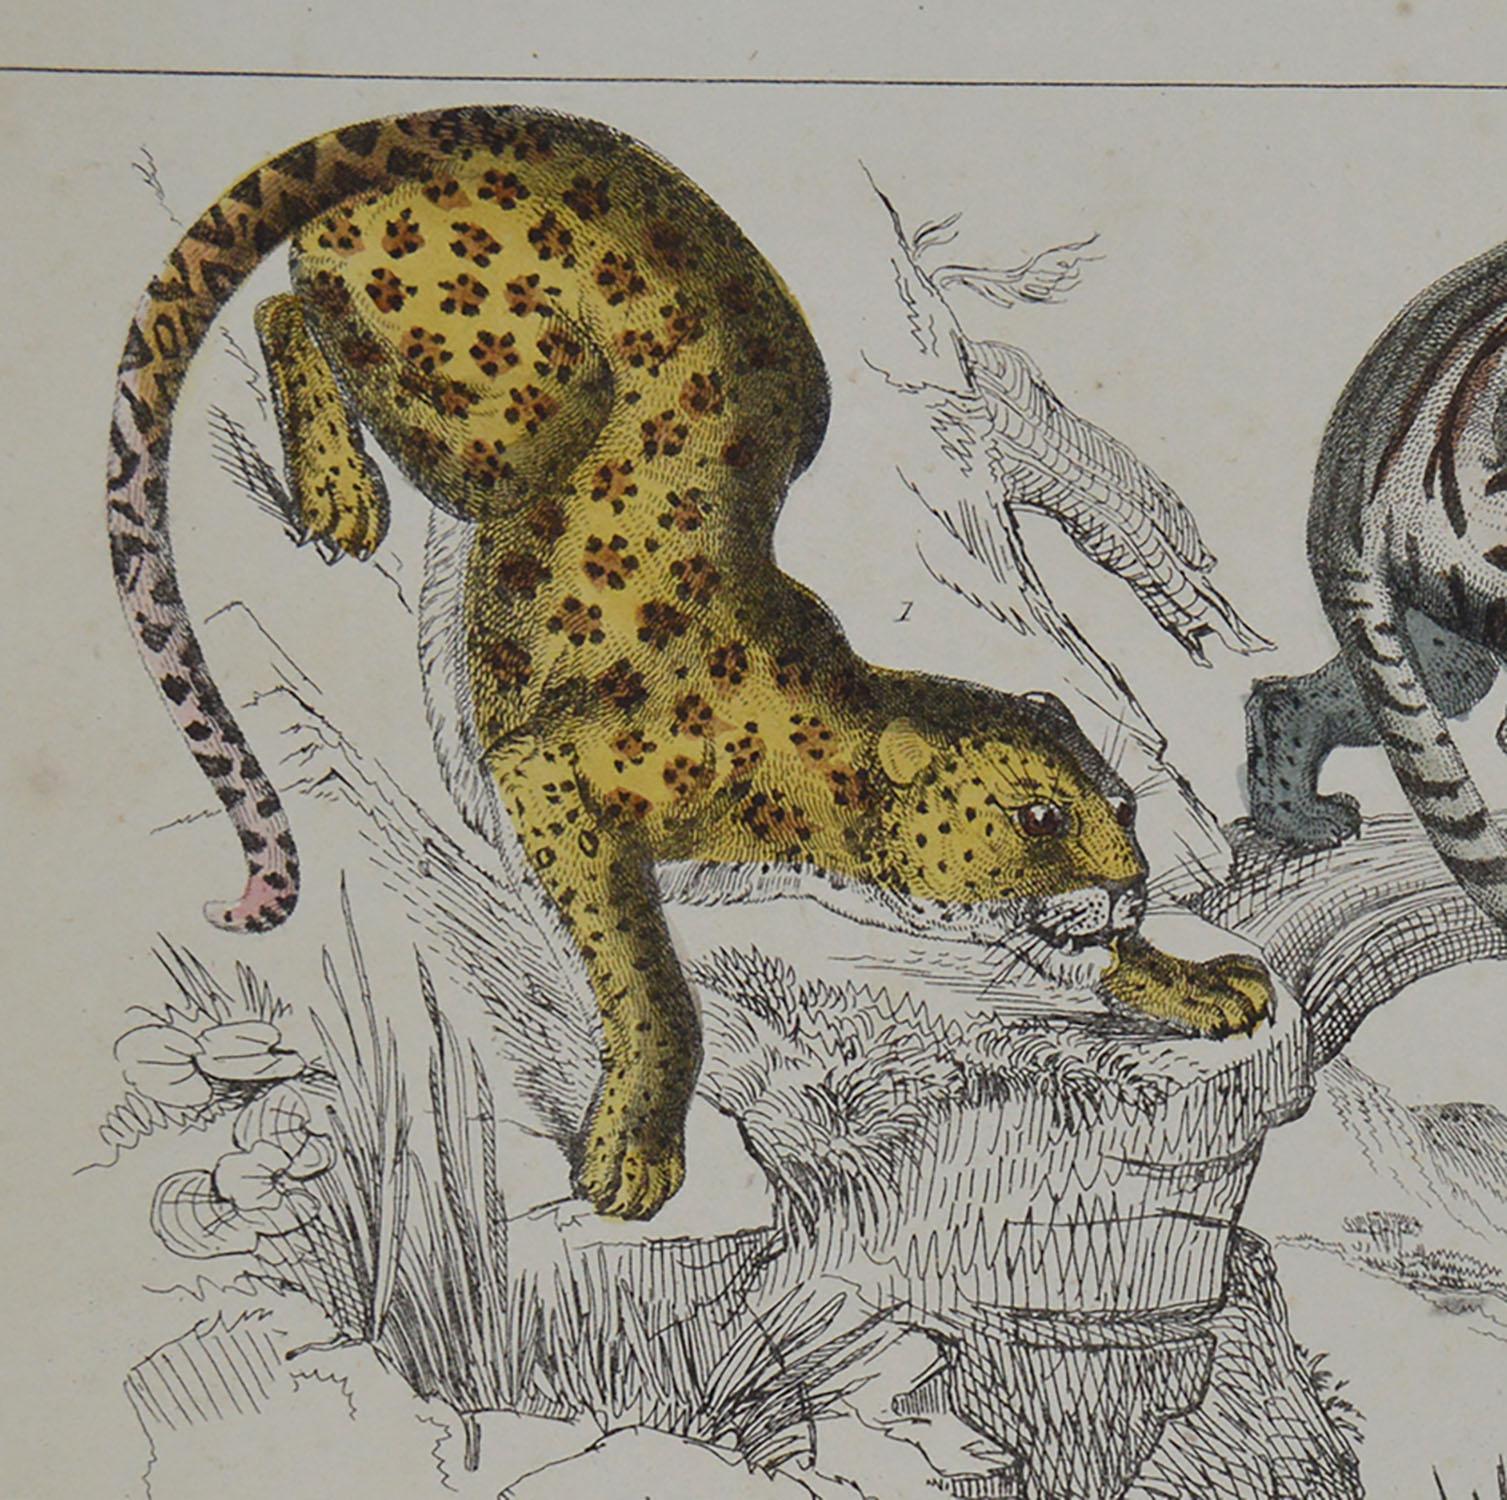 Folk Art Original Antique Print of Cats, 1847 'Unframed'